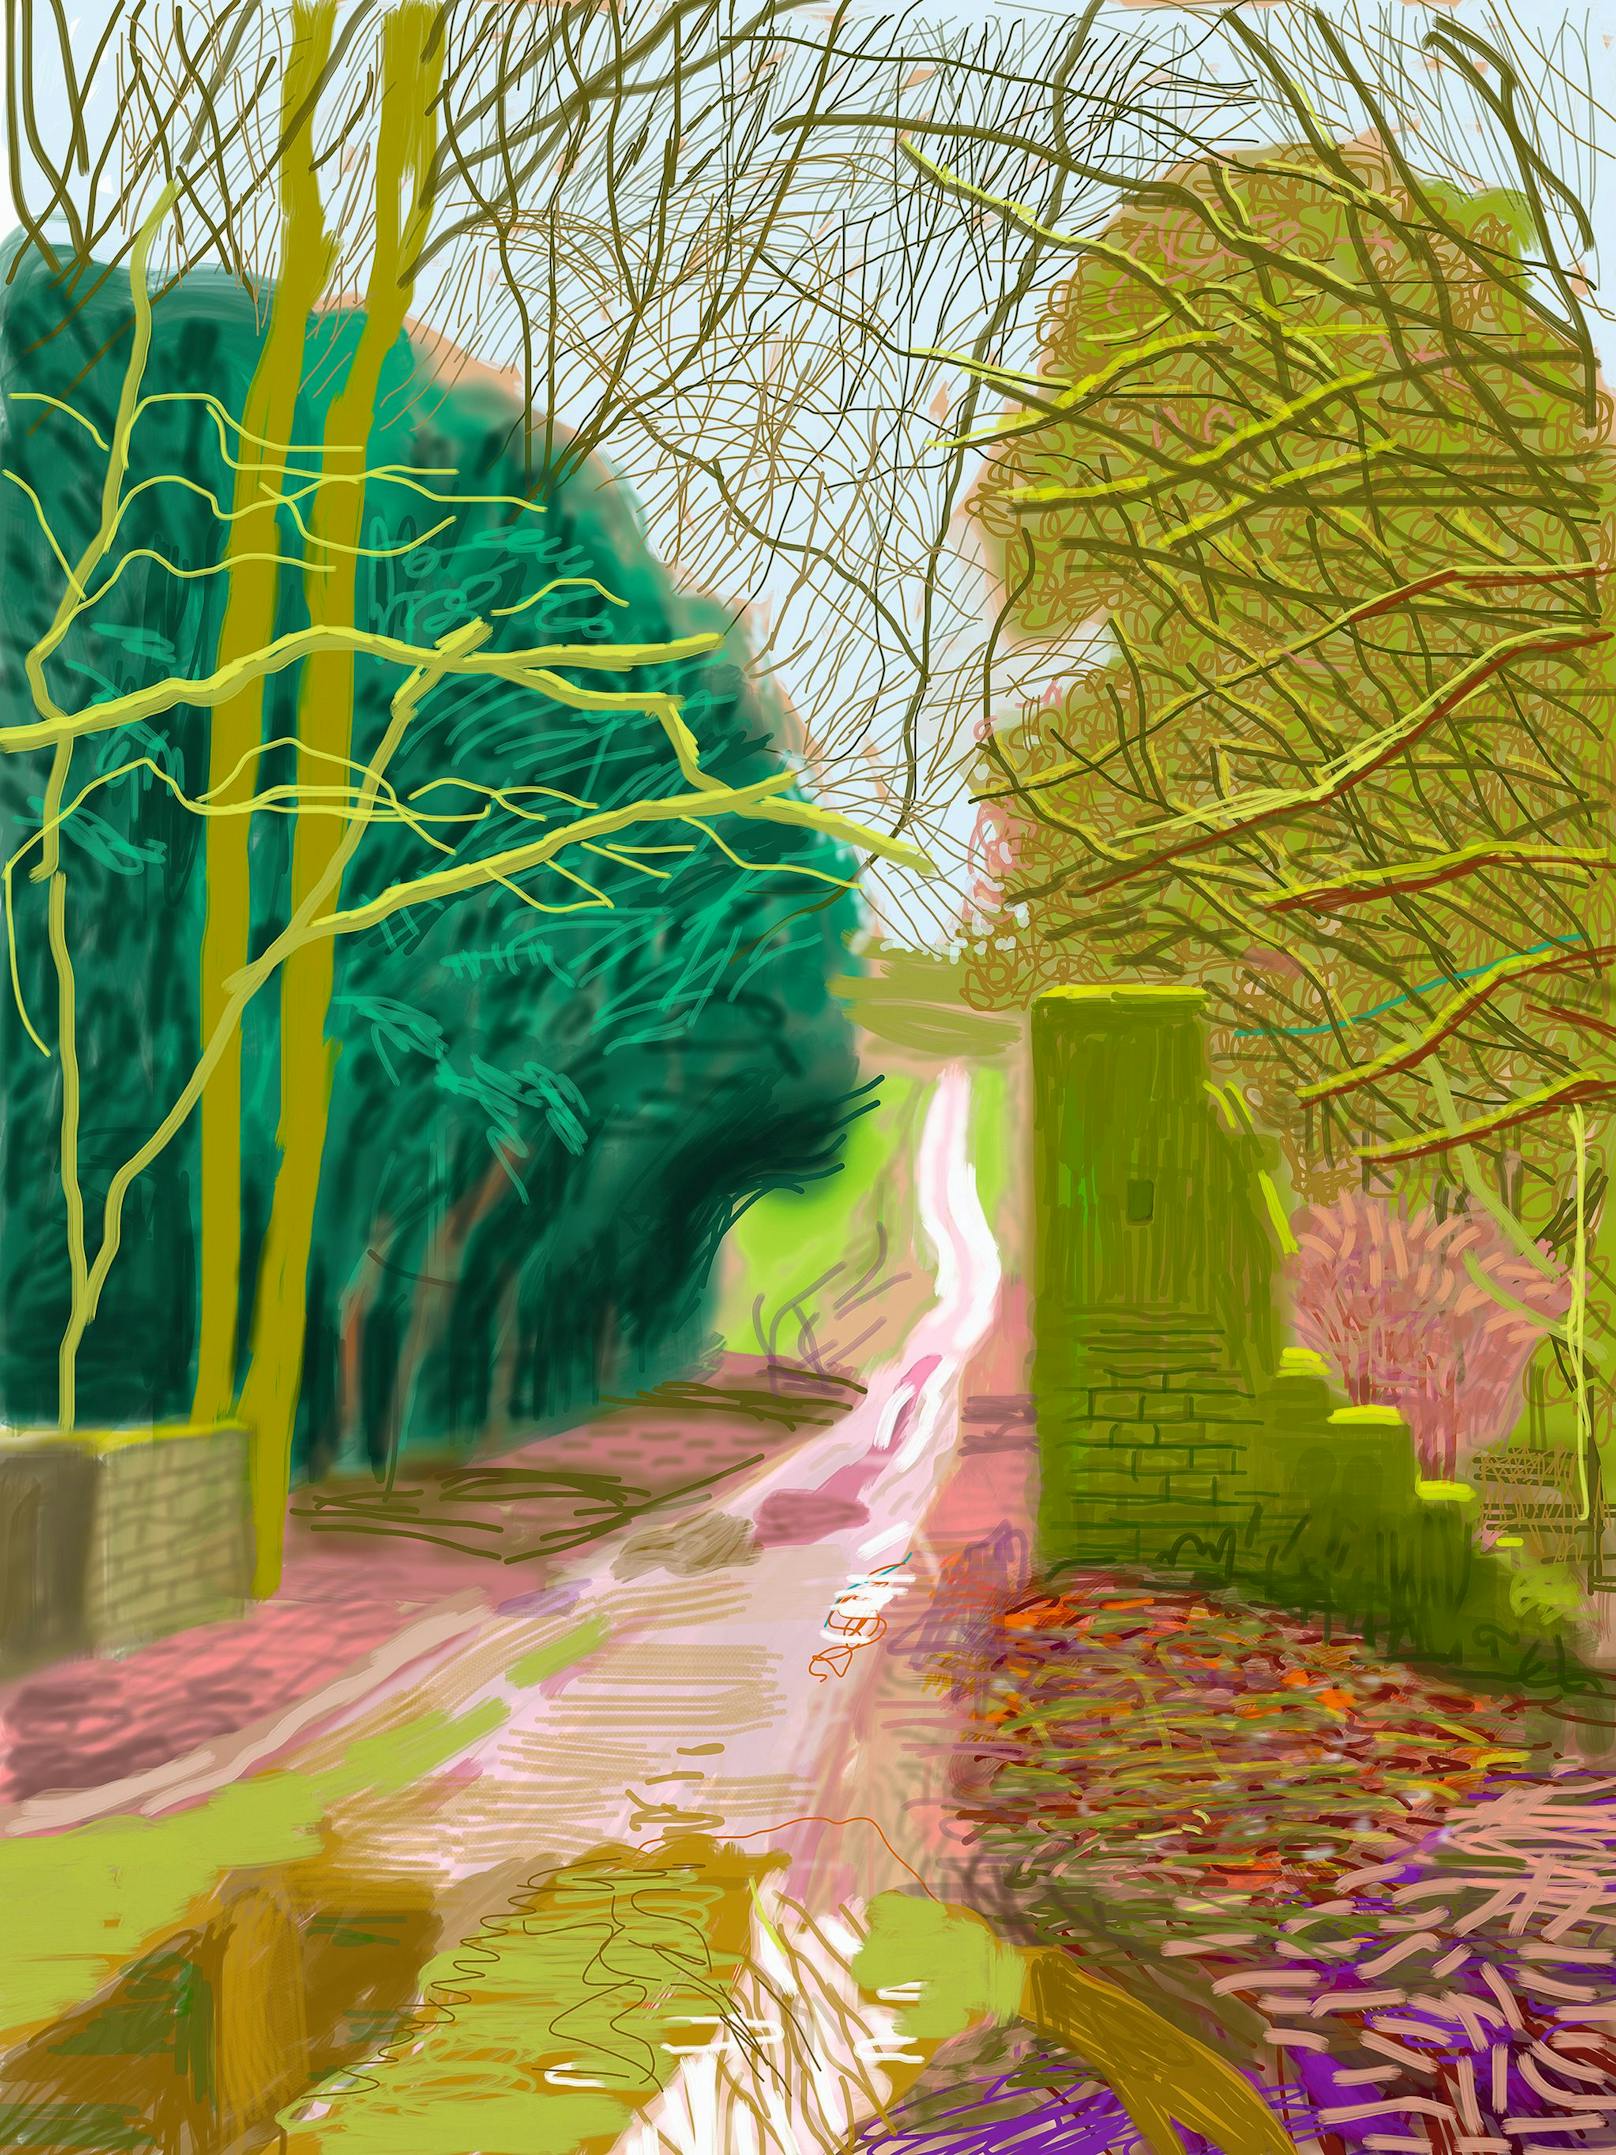 David Hockney, The Arrival of Spring in Woldgate, East Yorkshire in 2011 (twenty eleven) – 29 January, 2011, iPad-Zeichnung, gedruckt auf vier Blatt